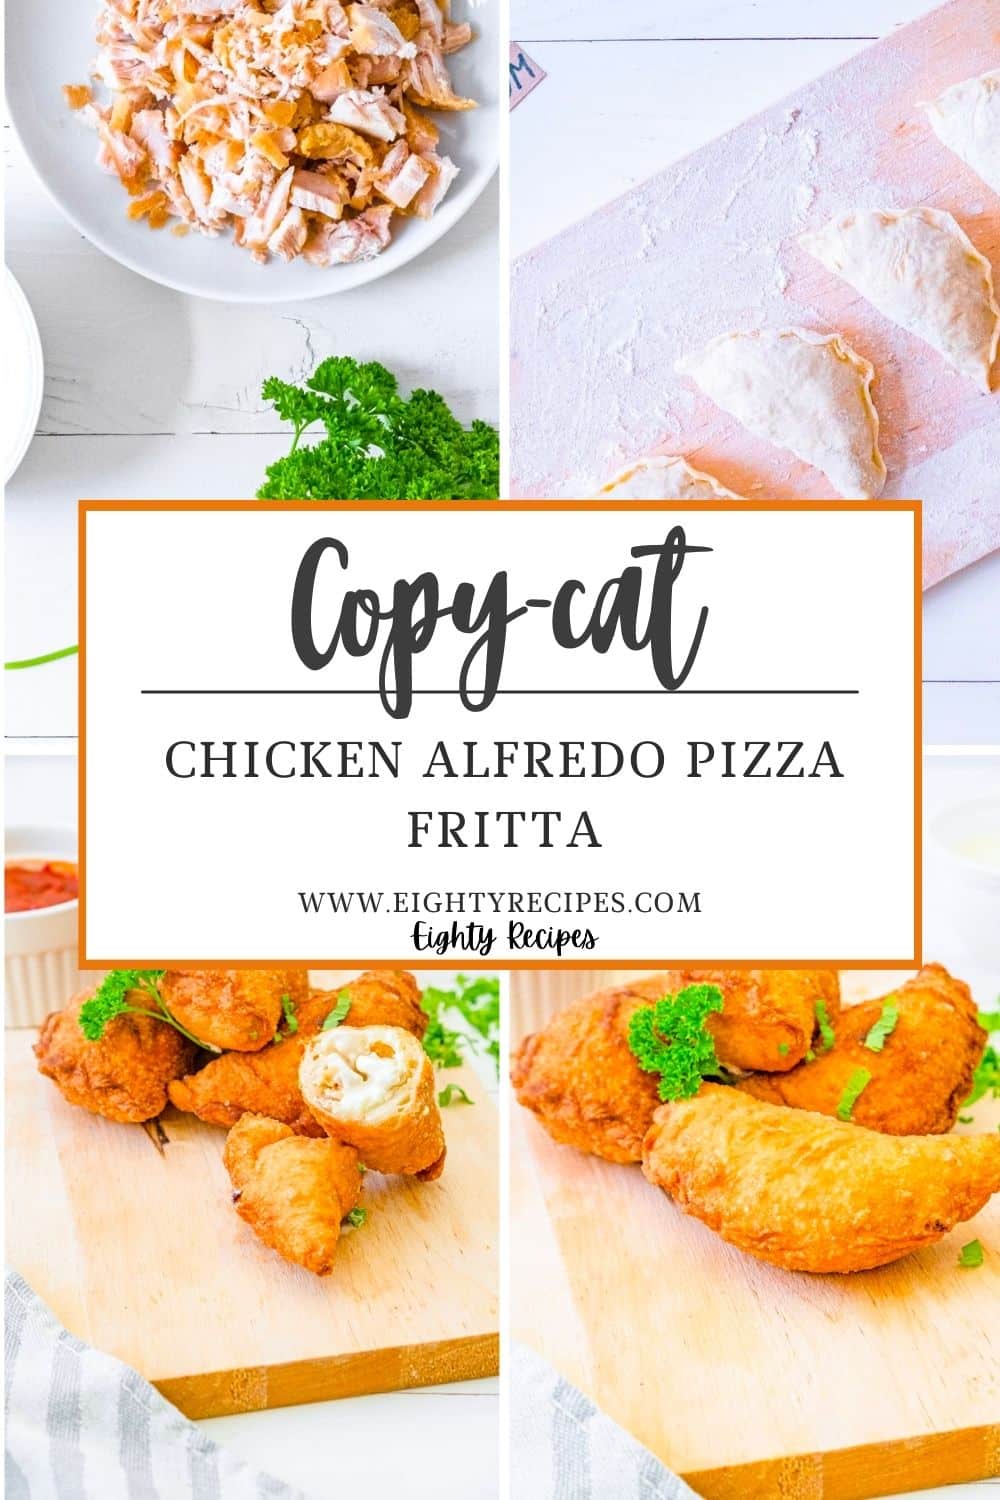 Chicken Alfredo Pizza Fritta